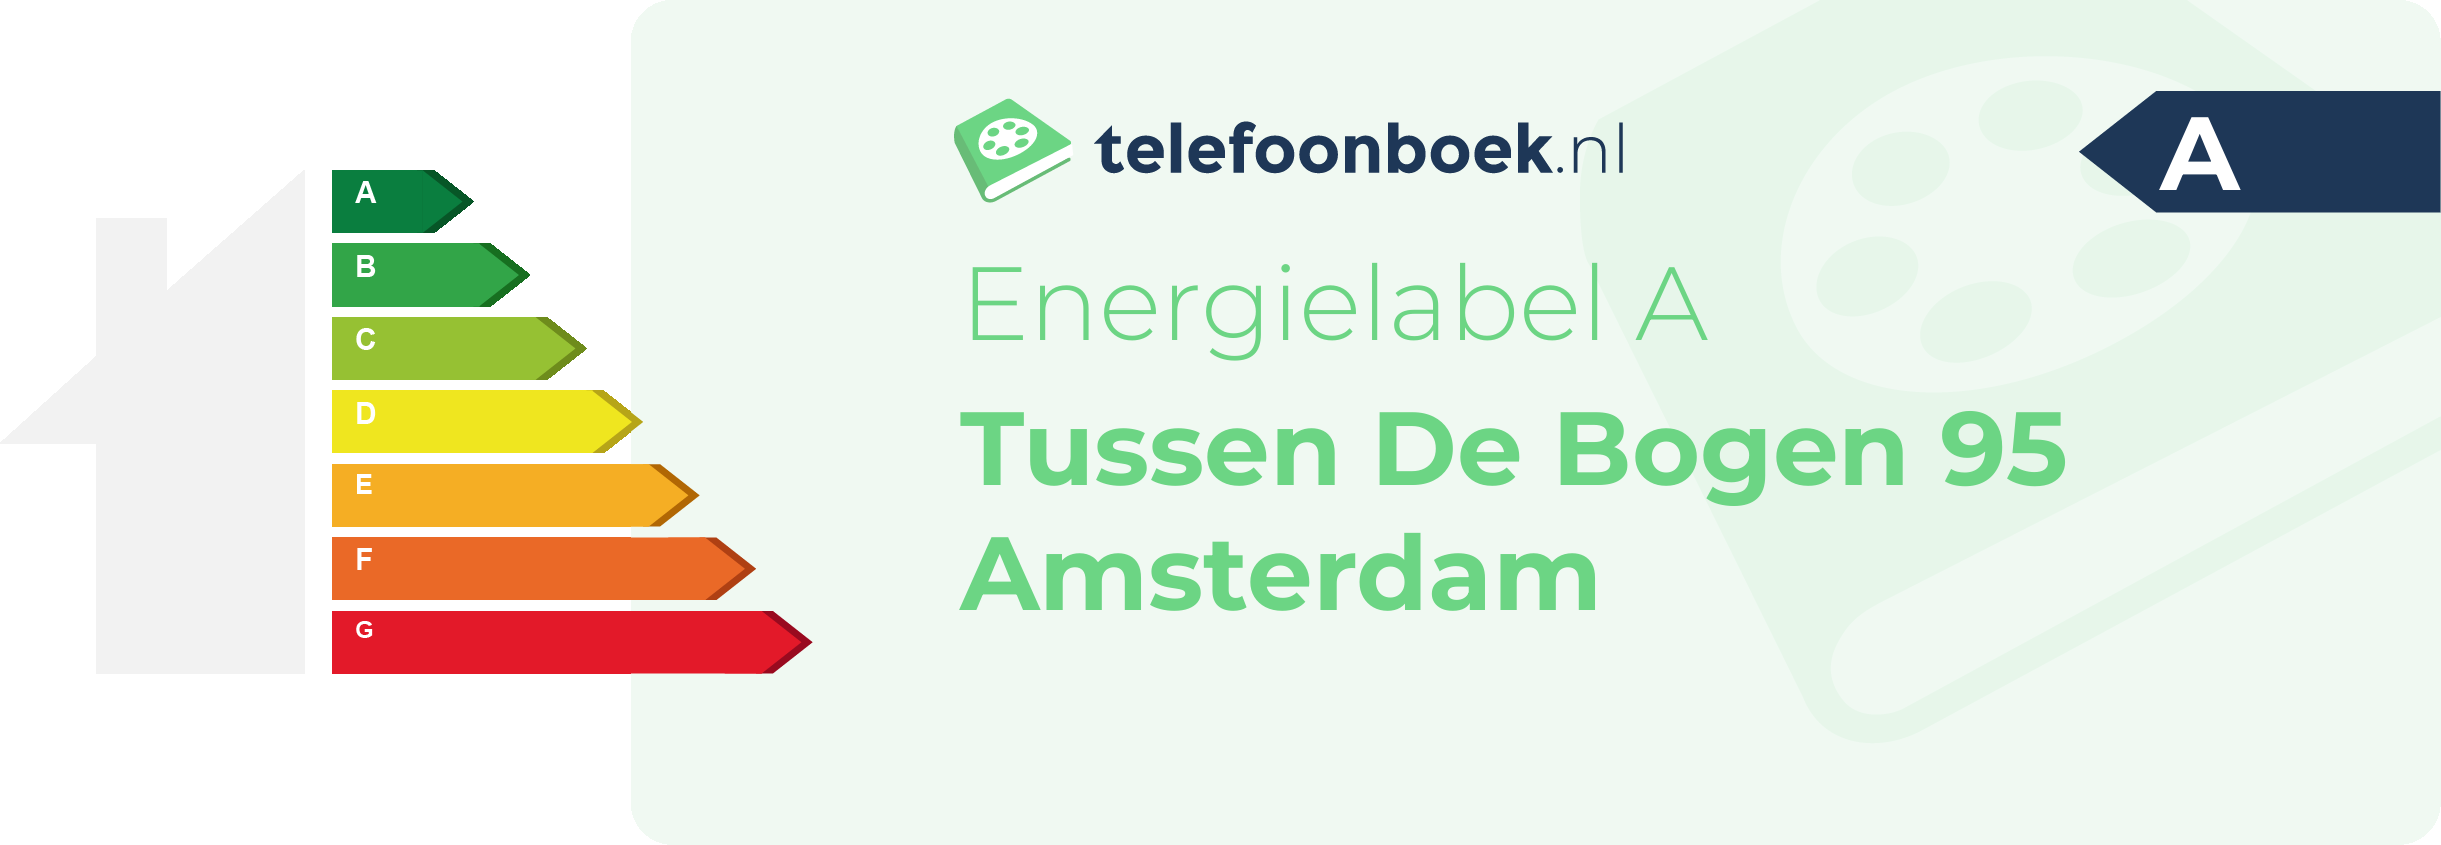 Energielabel Tussen De Bogen 95 Amsterdam